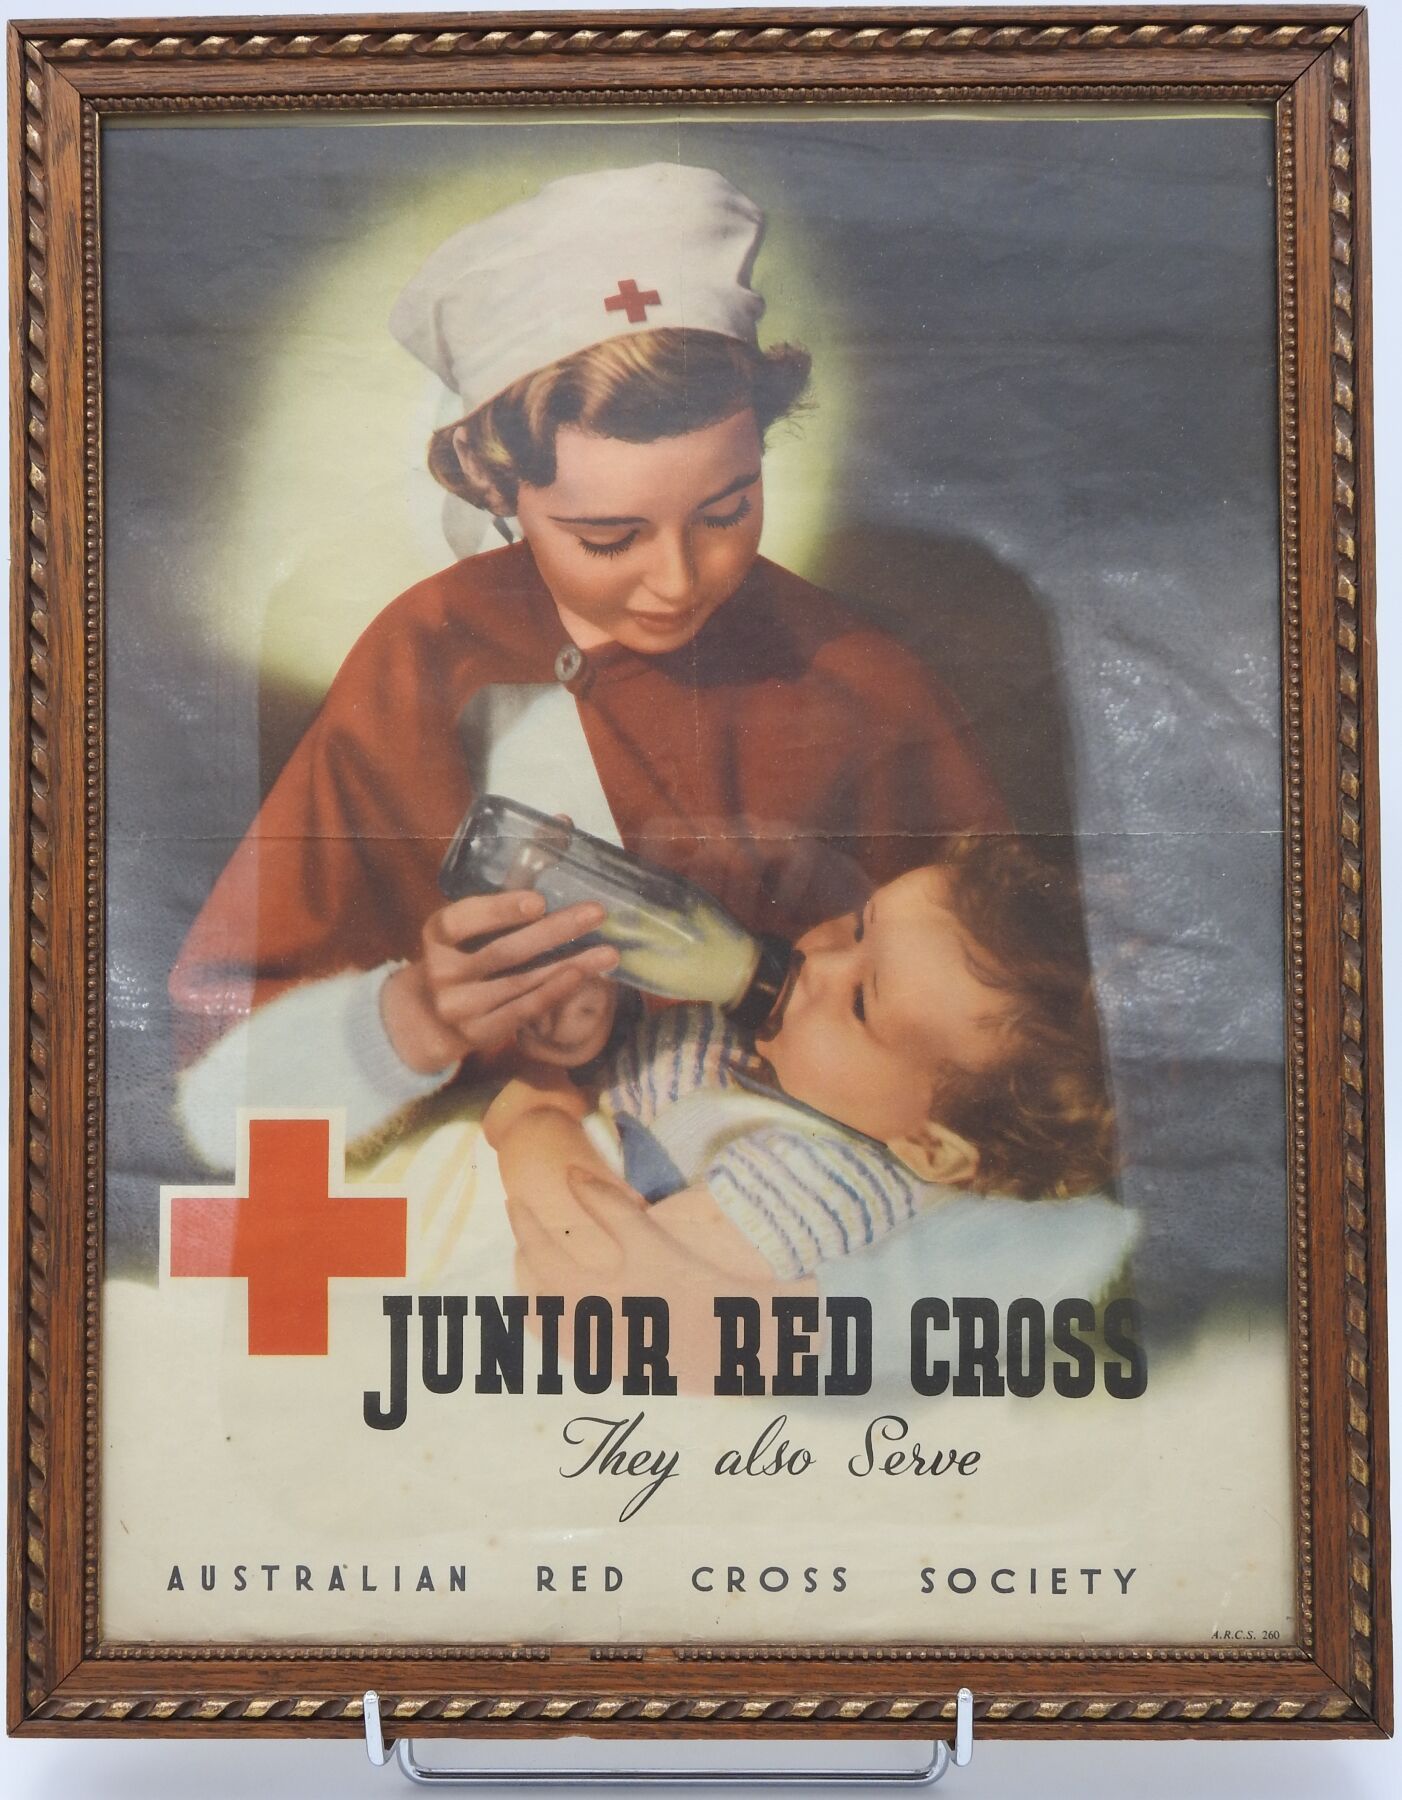 Null 澳大利亚红十字会的海报 "少年红十字会，他们也在服务"，右下方标有A.R.C.S. 260。有框。45 x 34.5厘米。褪色，褶皱，小裂缝。